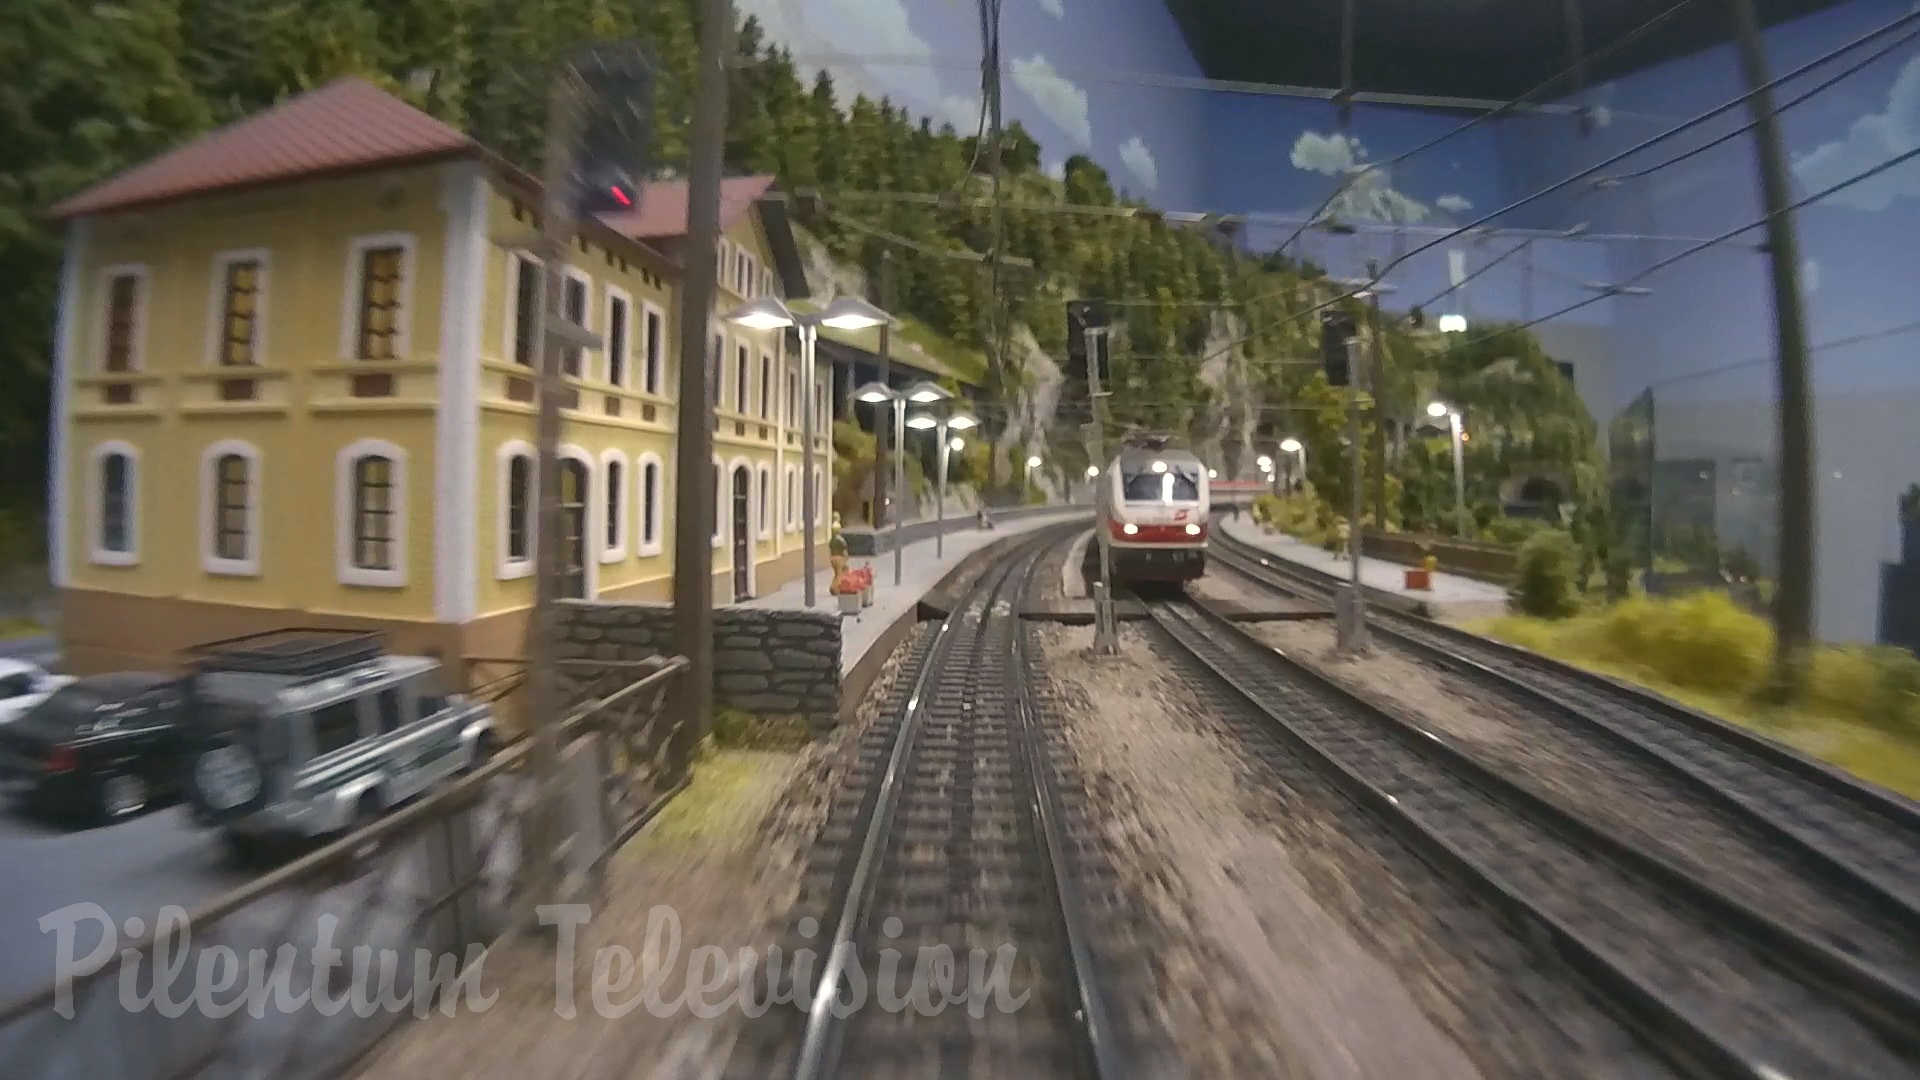 תערוכת הרכבות הגדולה ביותר של מיסטר פורשה: מיני רכבת באוסטריה, שוויץ וגרמניה